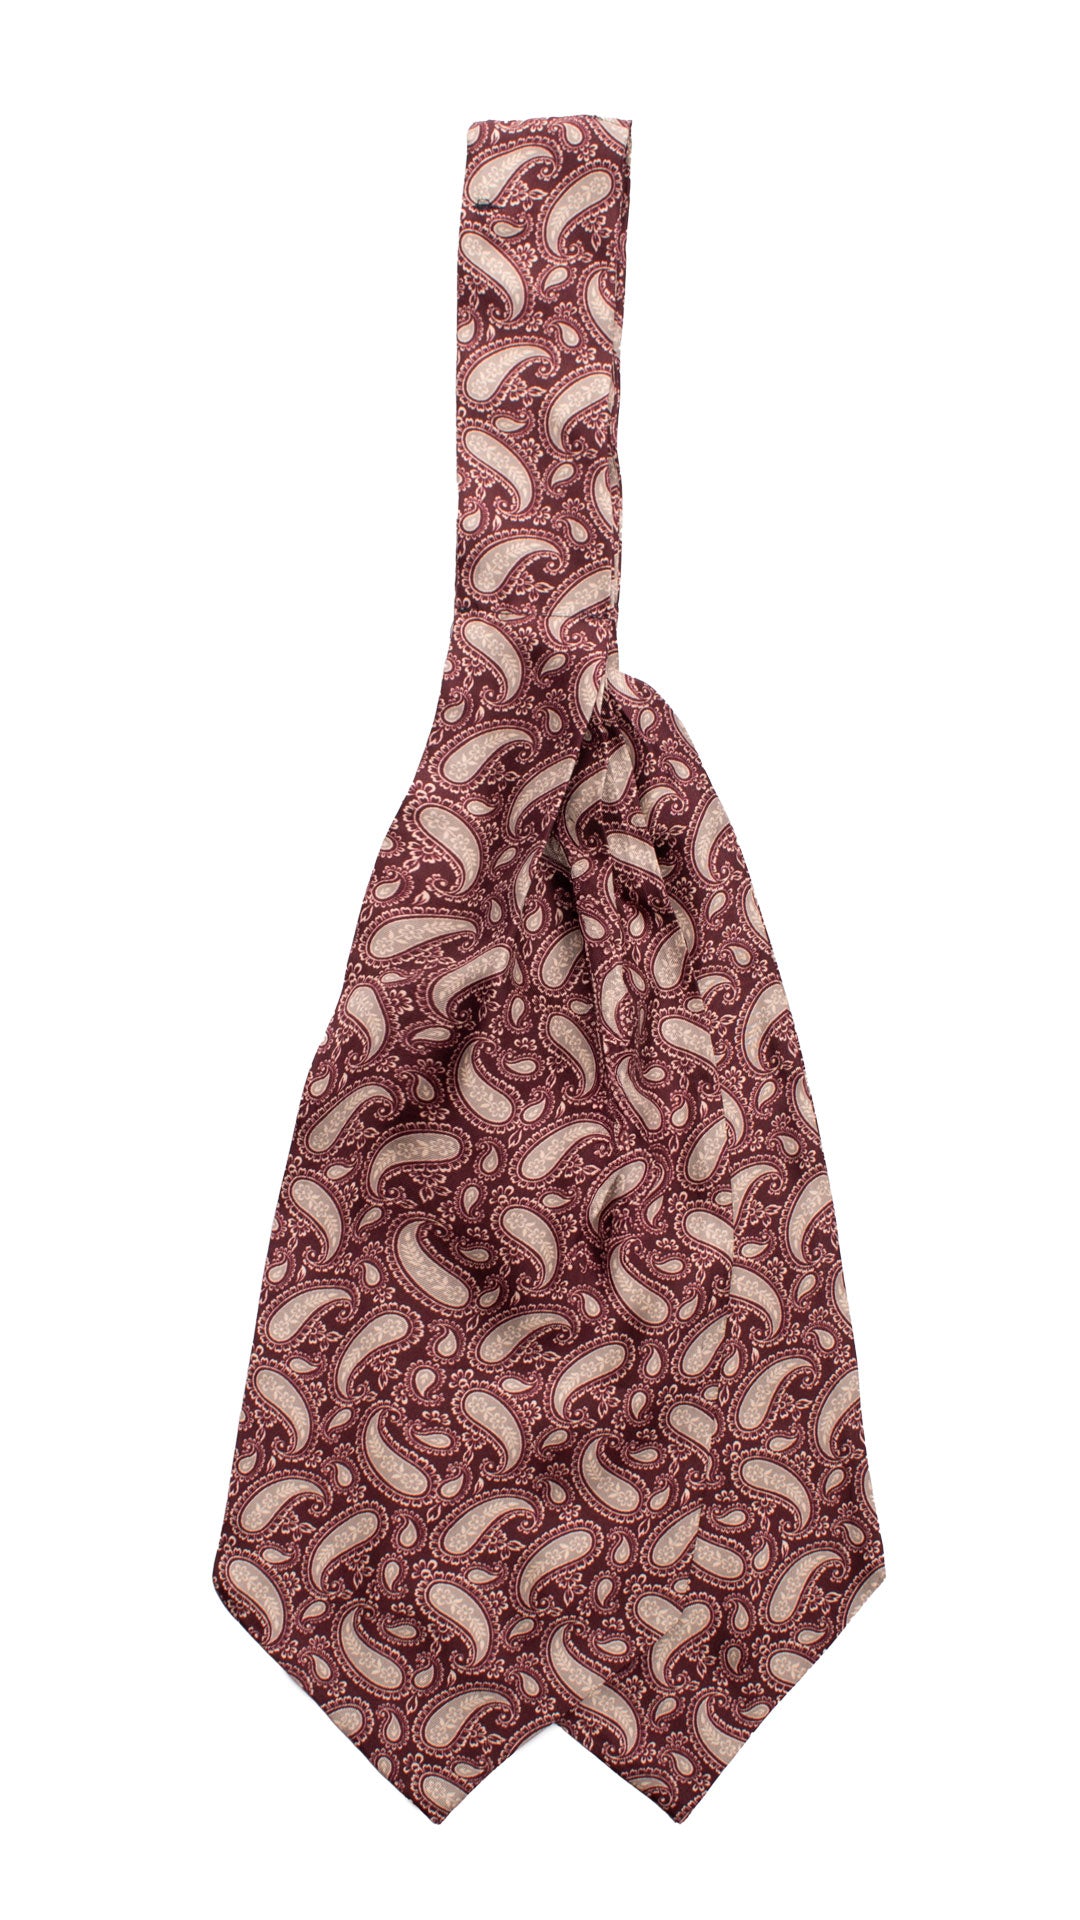 Ascot Stampa di Seta Bordeaux Paisley Tono su Tono Grigio Made in Italy Graffeo Cravatte Retro